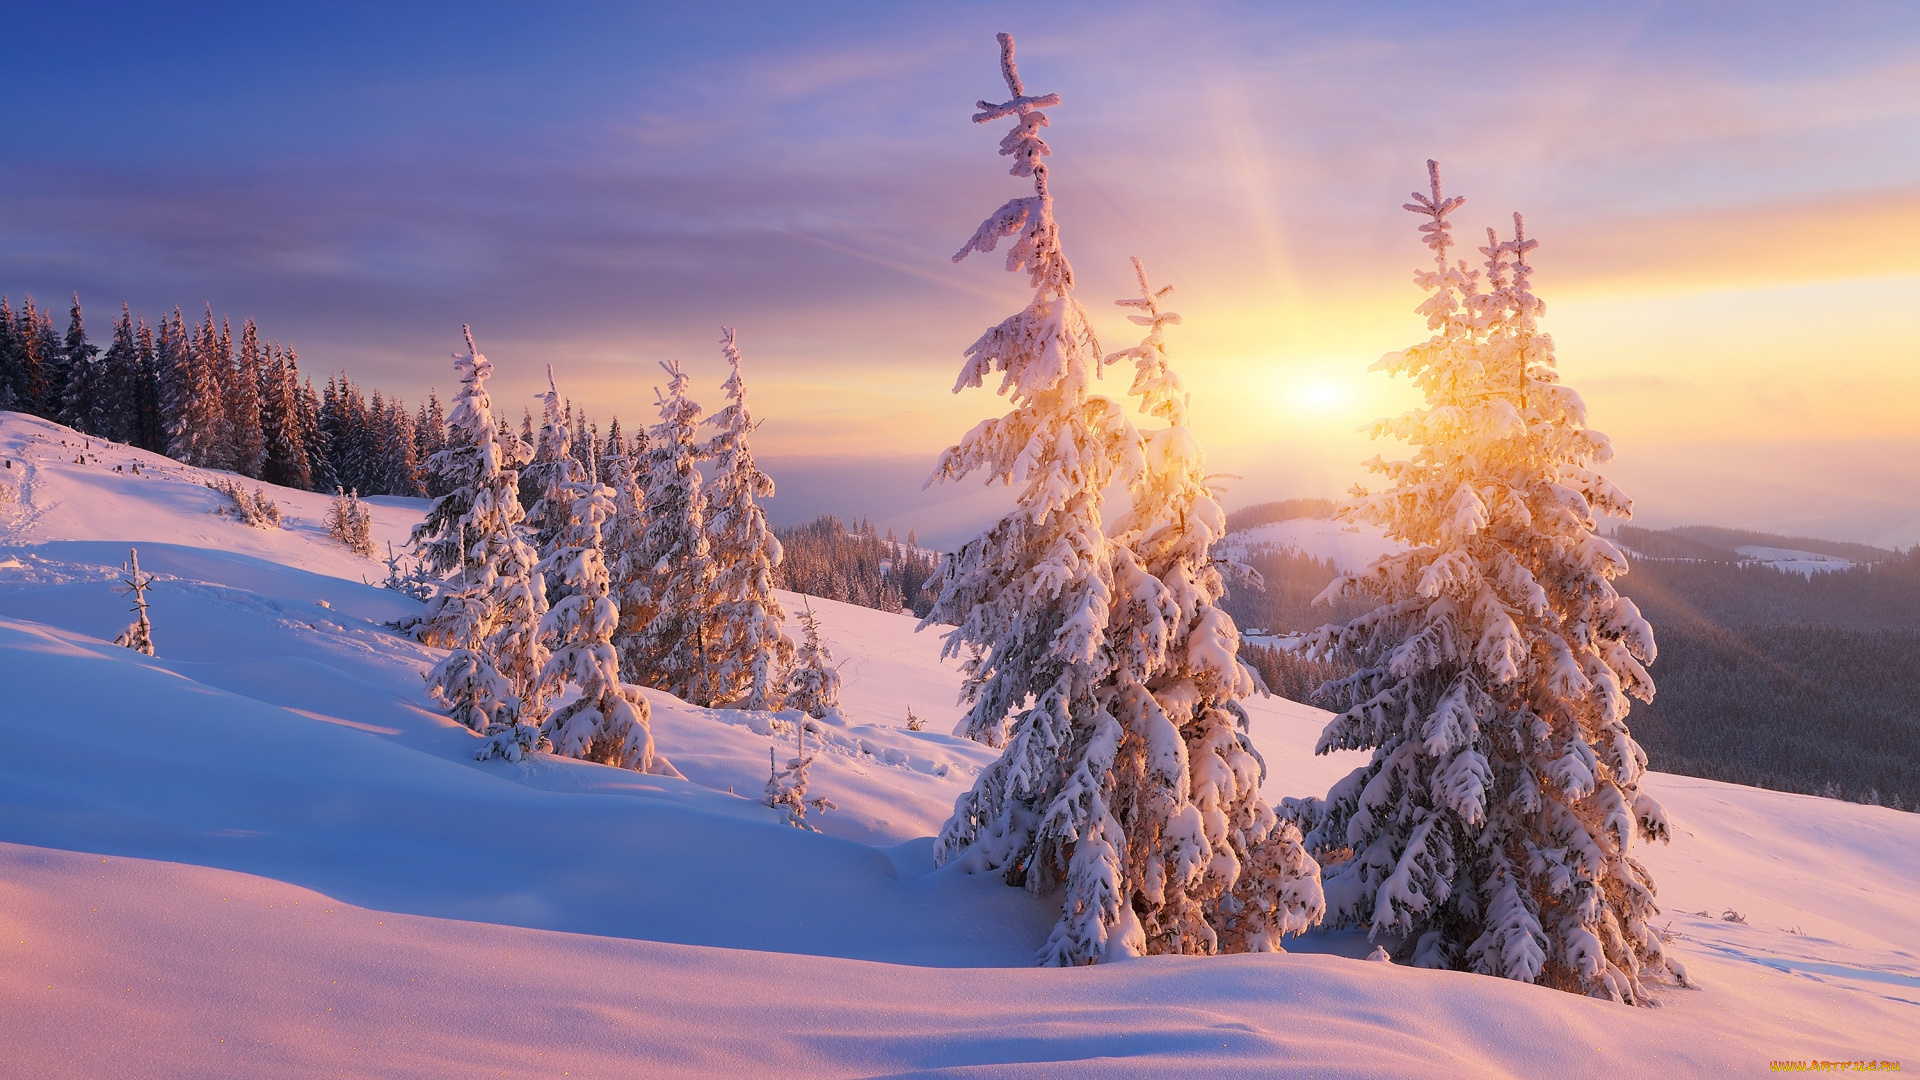 природа, зима, сказочно, облака, ёлки, рассвет, красота, пейзаж, сугробы, склон, ветки, снег, лучи, ели, горы, мороз, и, солнце, день, чудесный, лес, холмы, небо, тени, закат